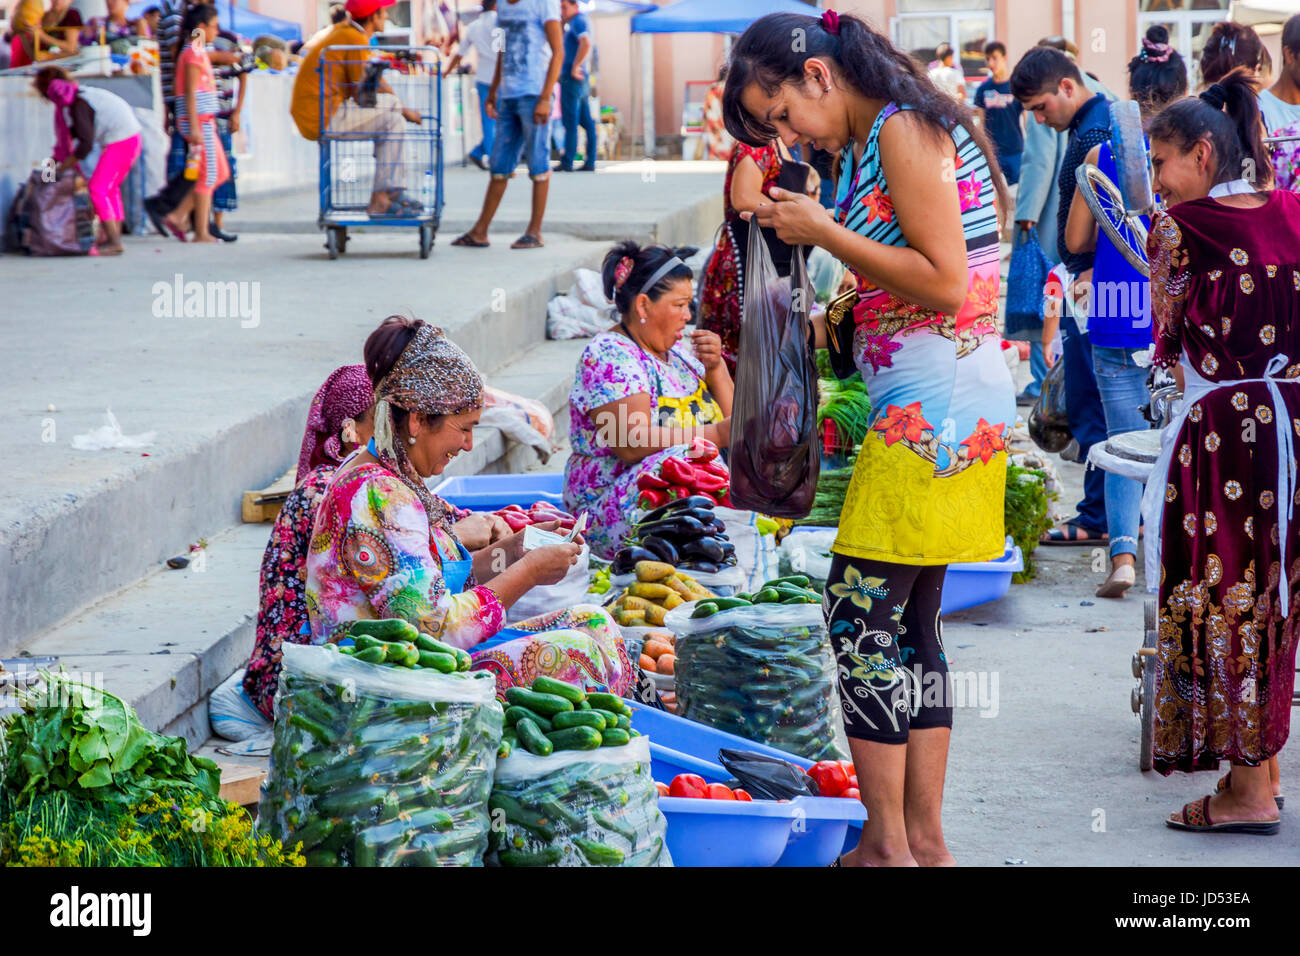 SAMARKAND, OUZBÉKISTAN - 28 août : des légumes à Siab bazar, le marché aux légumes et fruits locaux dans la région de Samarkand. Août 2016 Banque D'Images